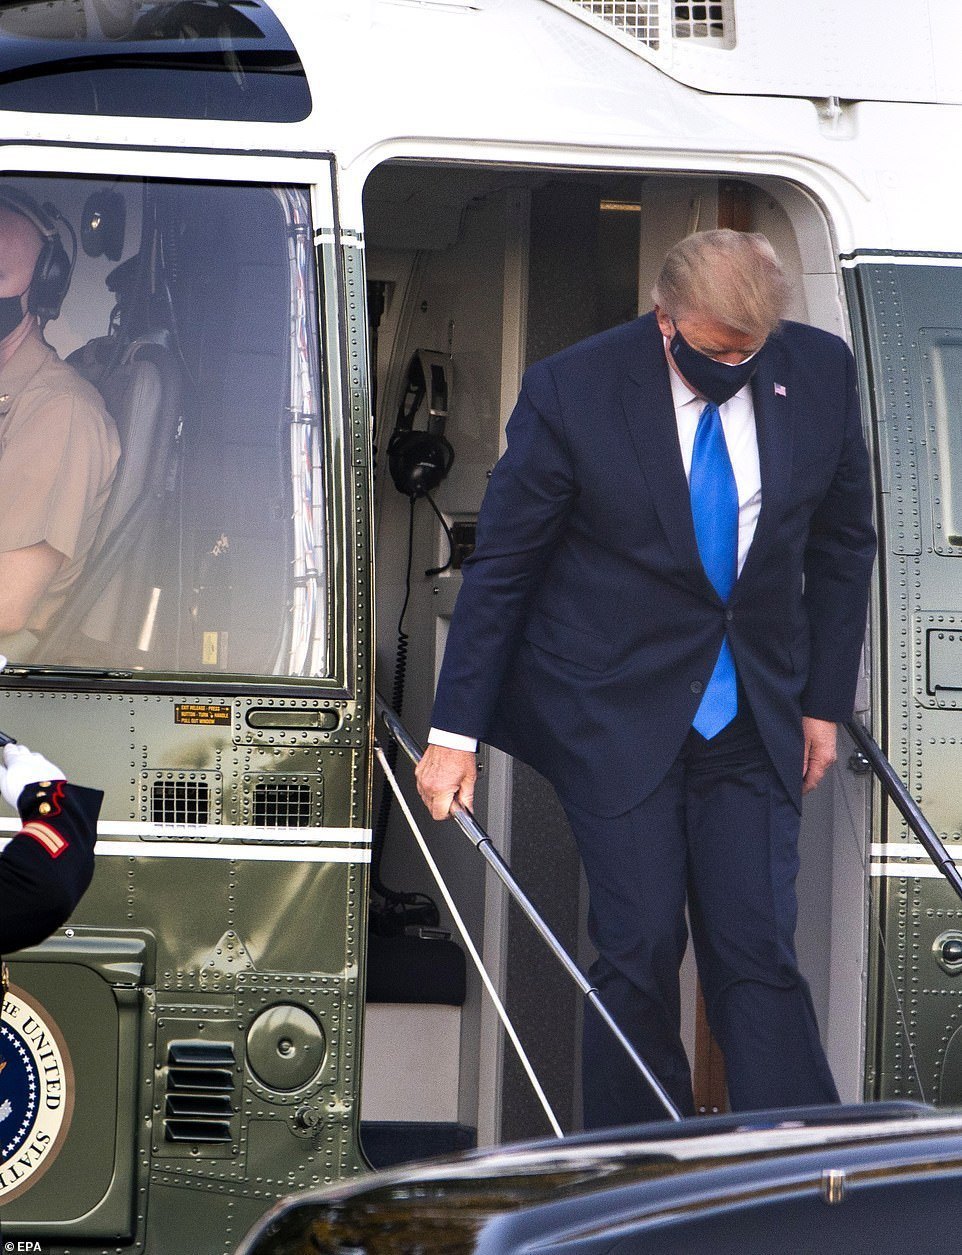  
Tổng thống Trump di chuyển trên trực thăng đến Trung tâm Y tế Walter Reed. (Ảnh: Daily Mail).